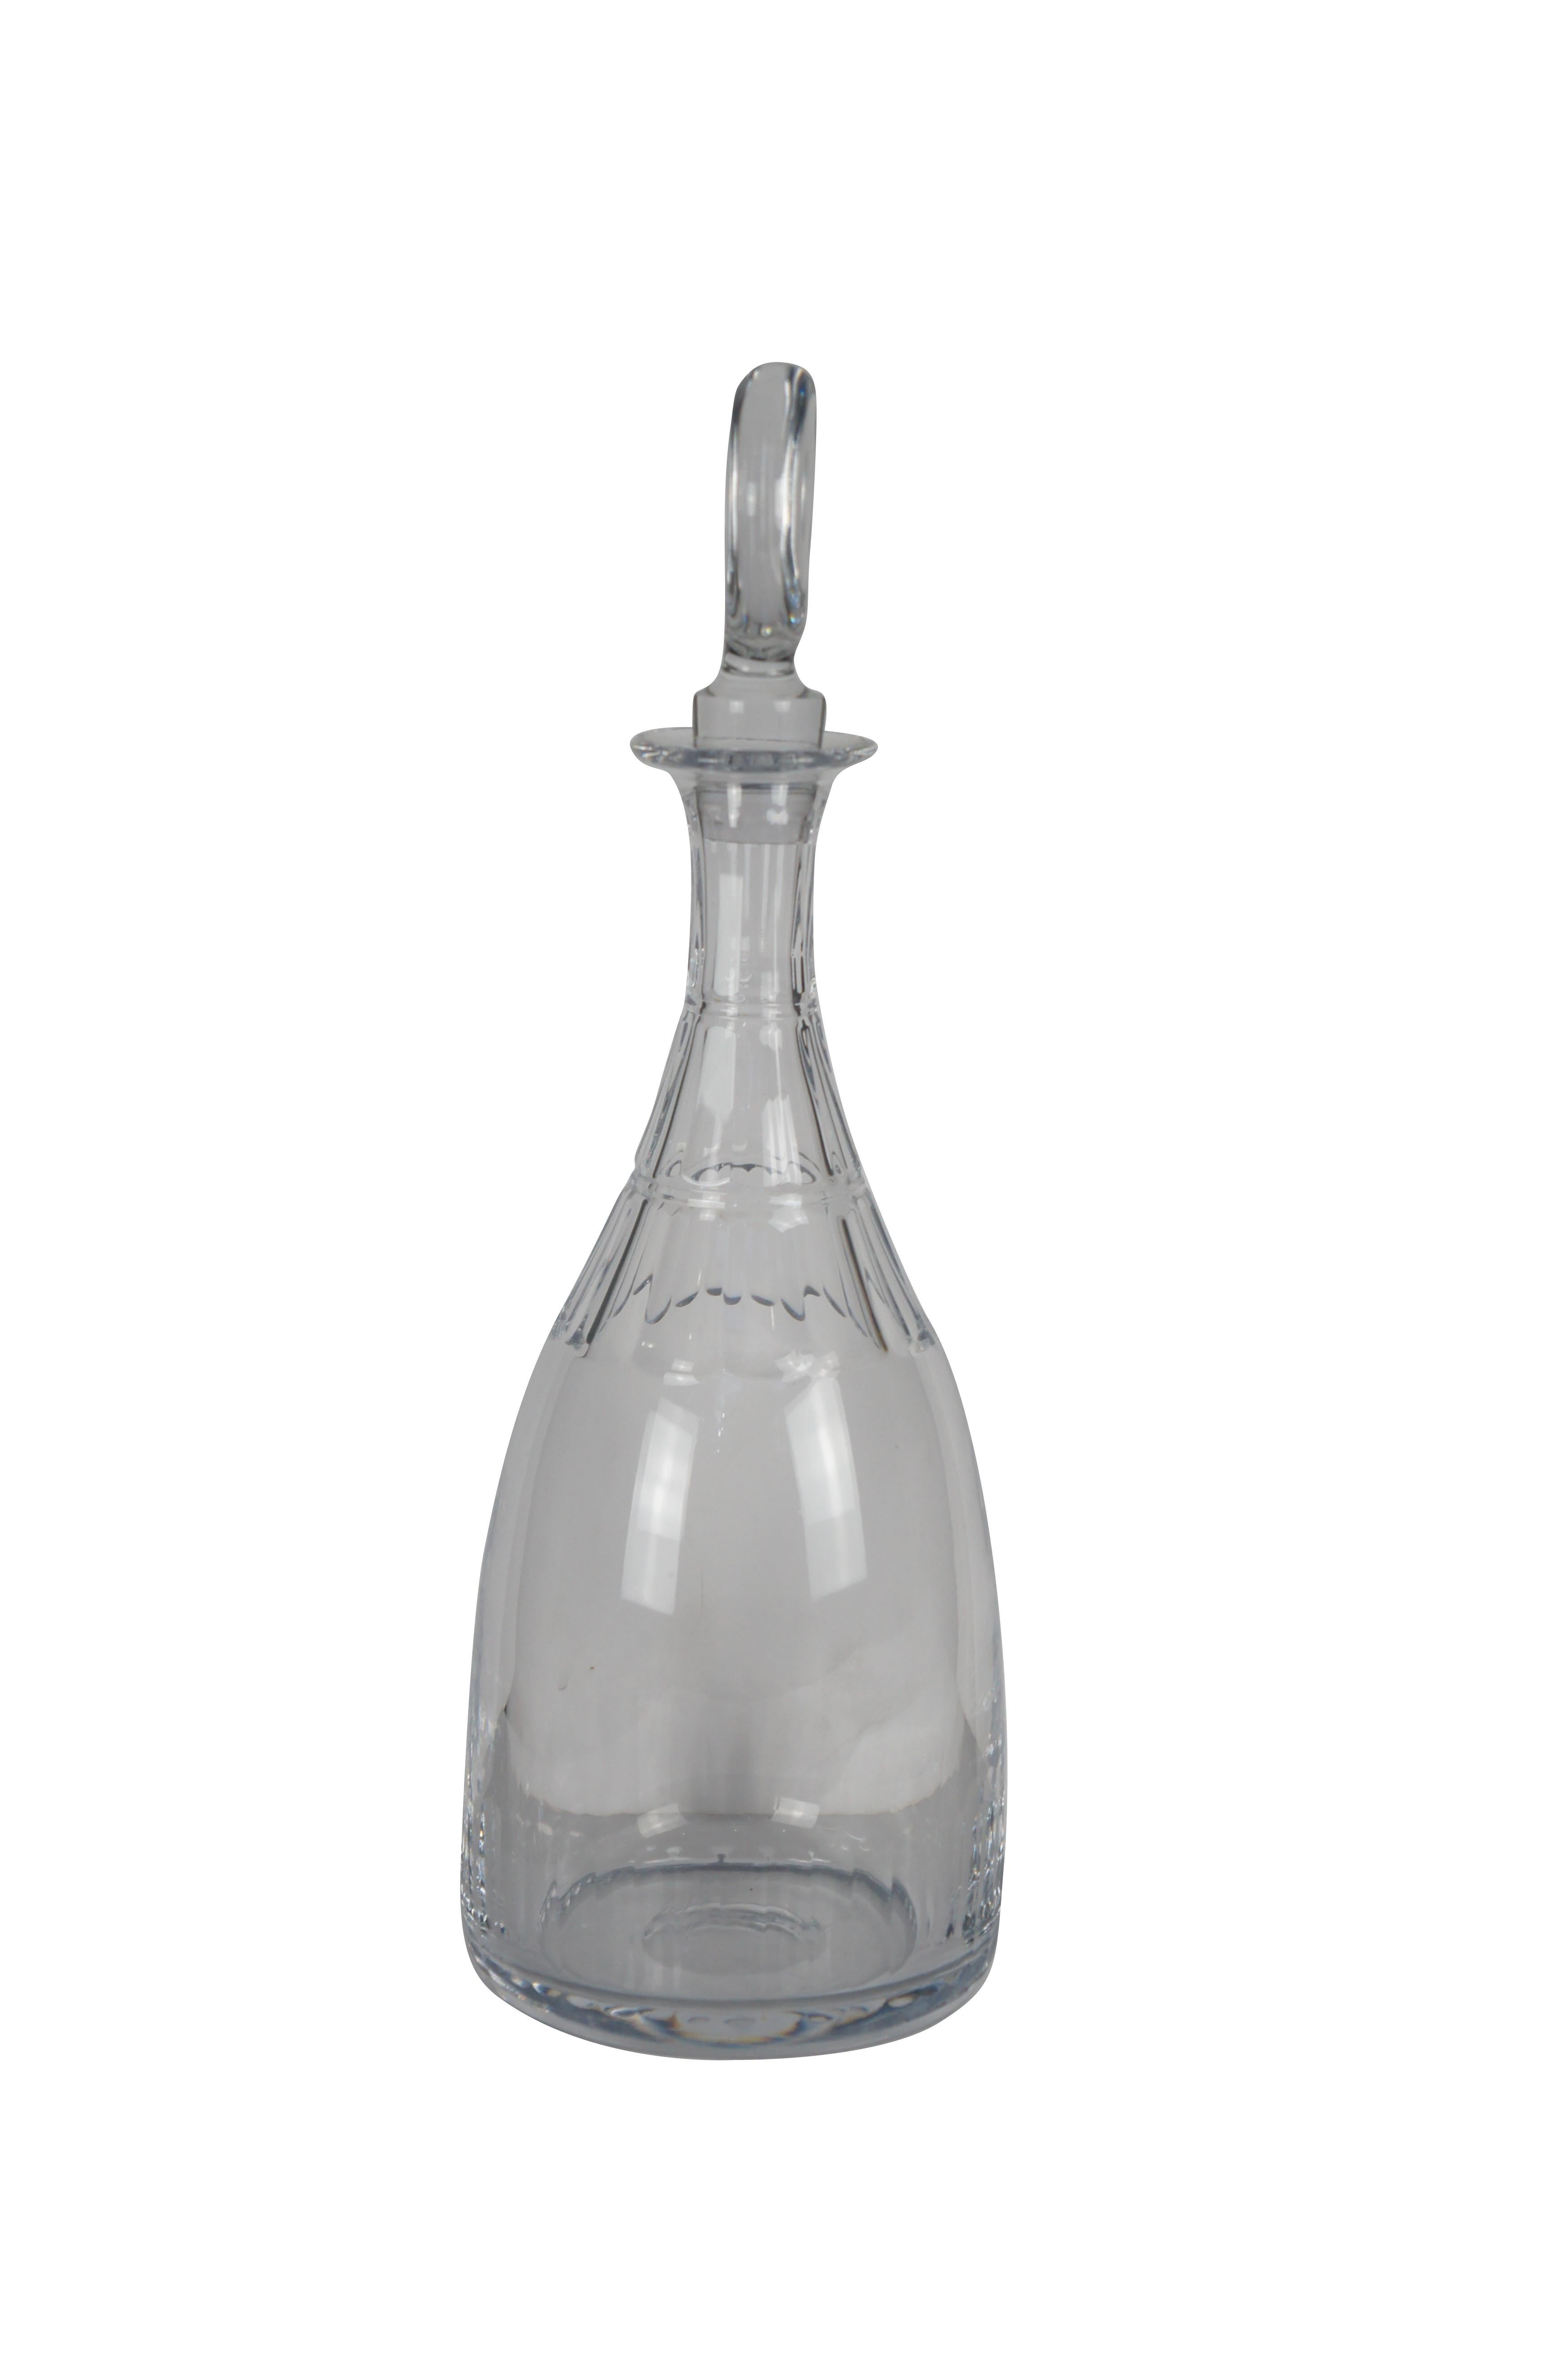 La carafe à décanter William Yeoward Nancy est une carafe en cristal clair, fabriquée à la main, avec des coupes plates et une capacité de 800 ml. Il fait partie de la collection Nancy et mesure 16 in avec le bouchon. La carafe s'inspire d'un